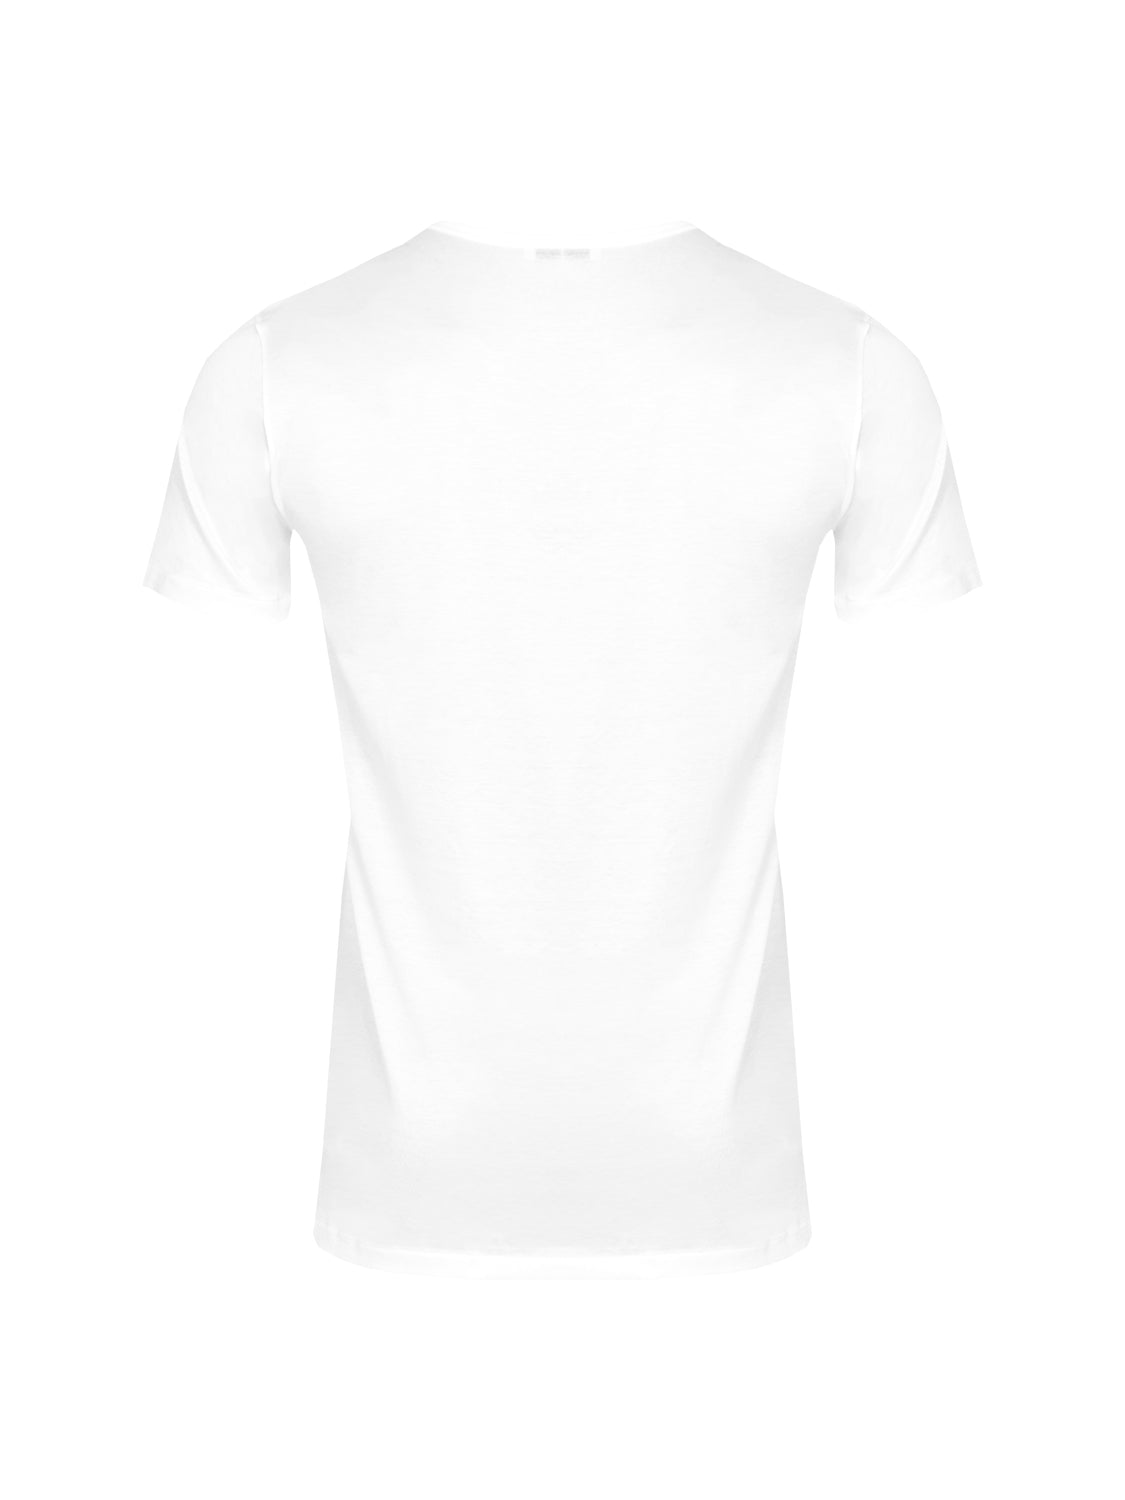 Royal Classic T-Shirt Kurzarm - Weiß